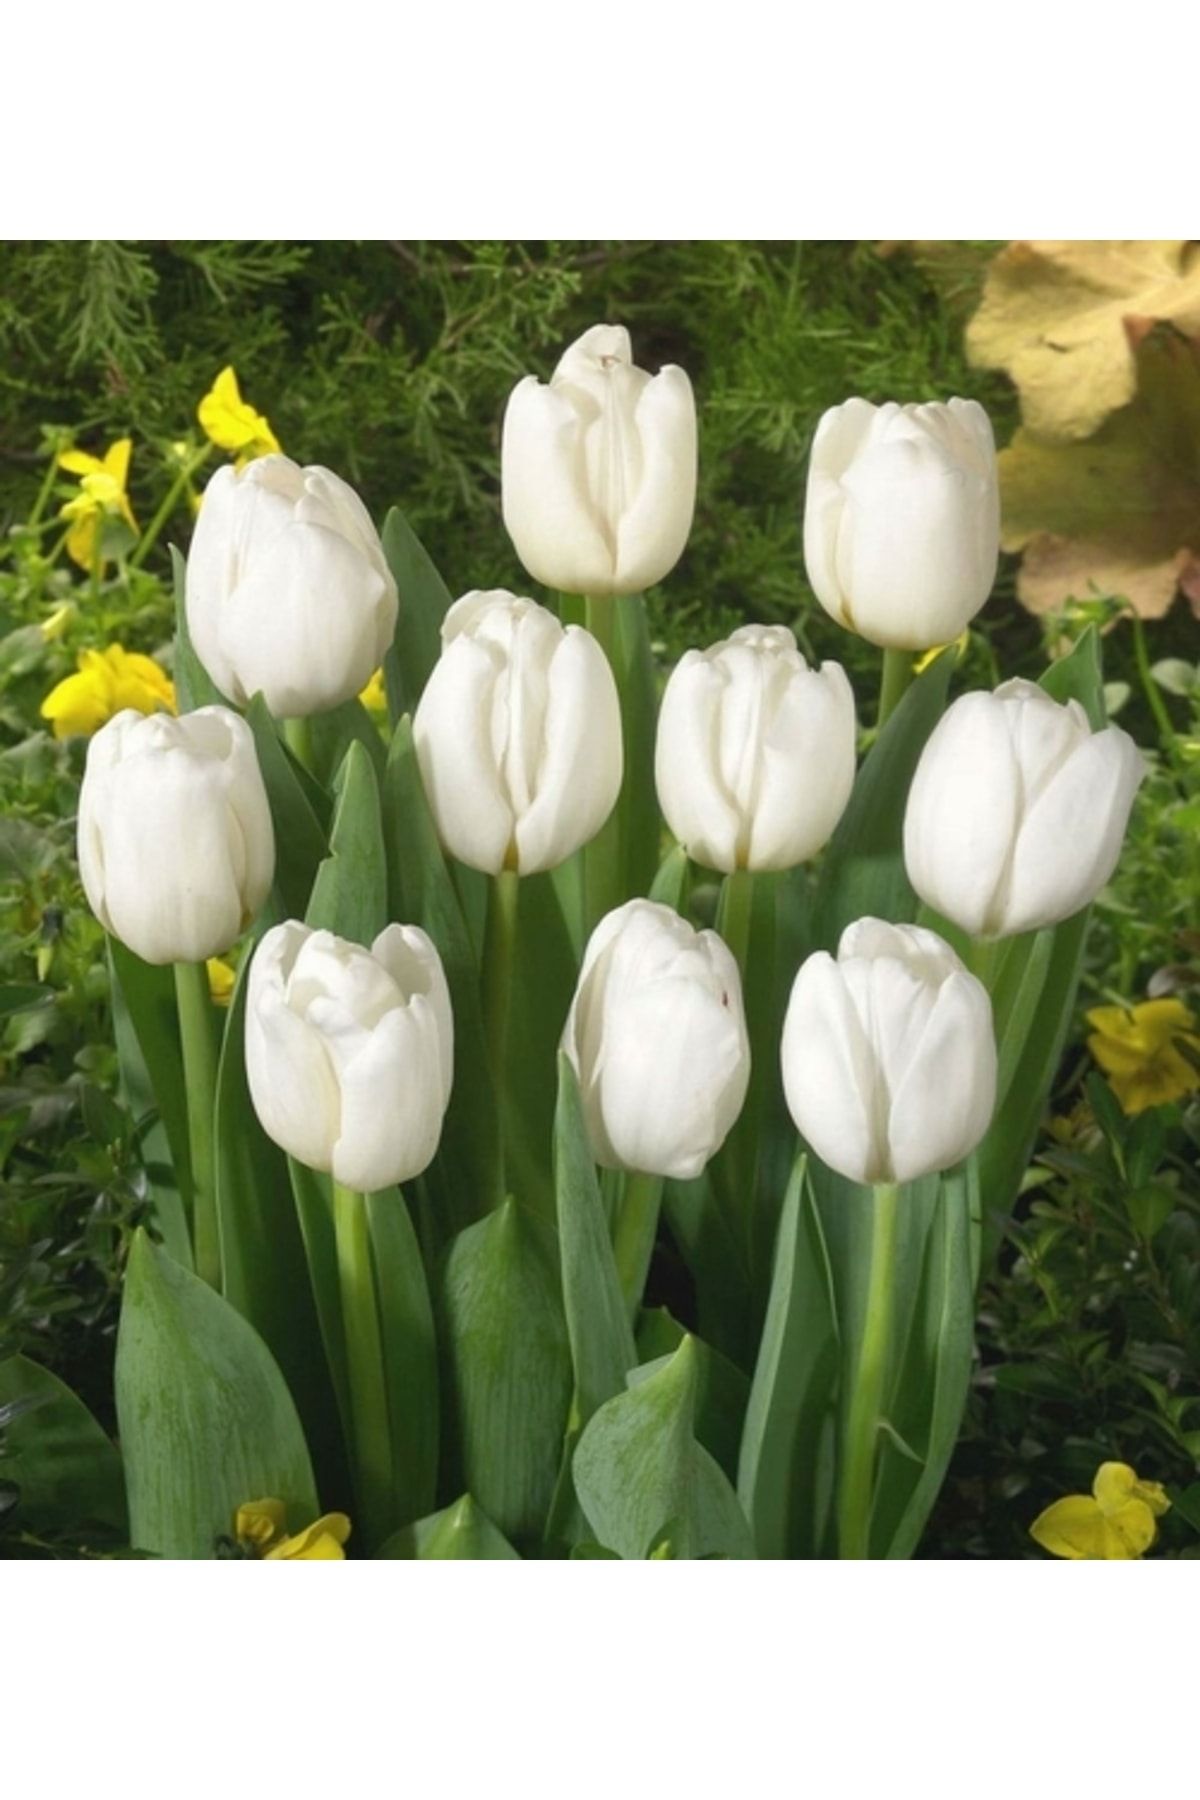 logitel 25 Adet Beyaz Renk Lale Çiçeği Tohumu + 10 Adet Hediye Karışık Gül Çiçek Tohumu